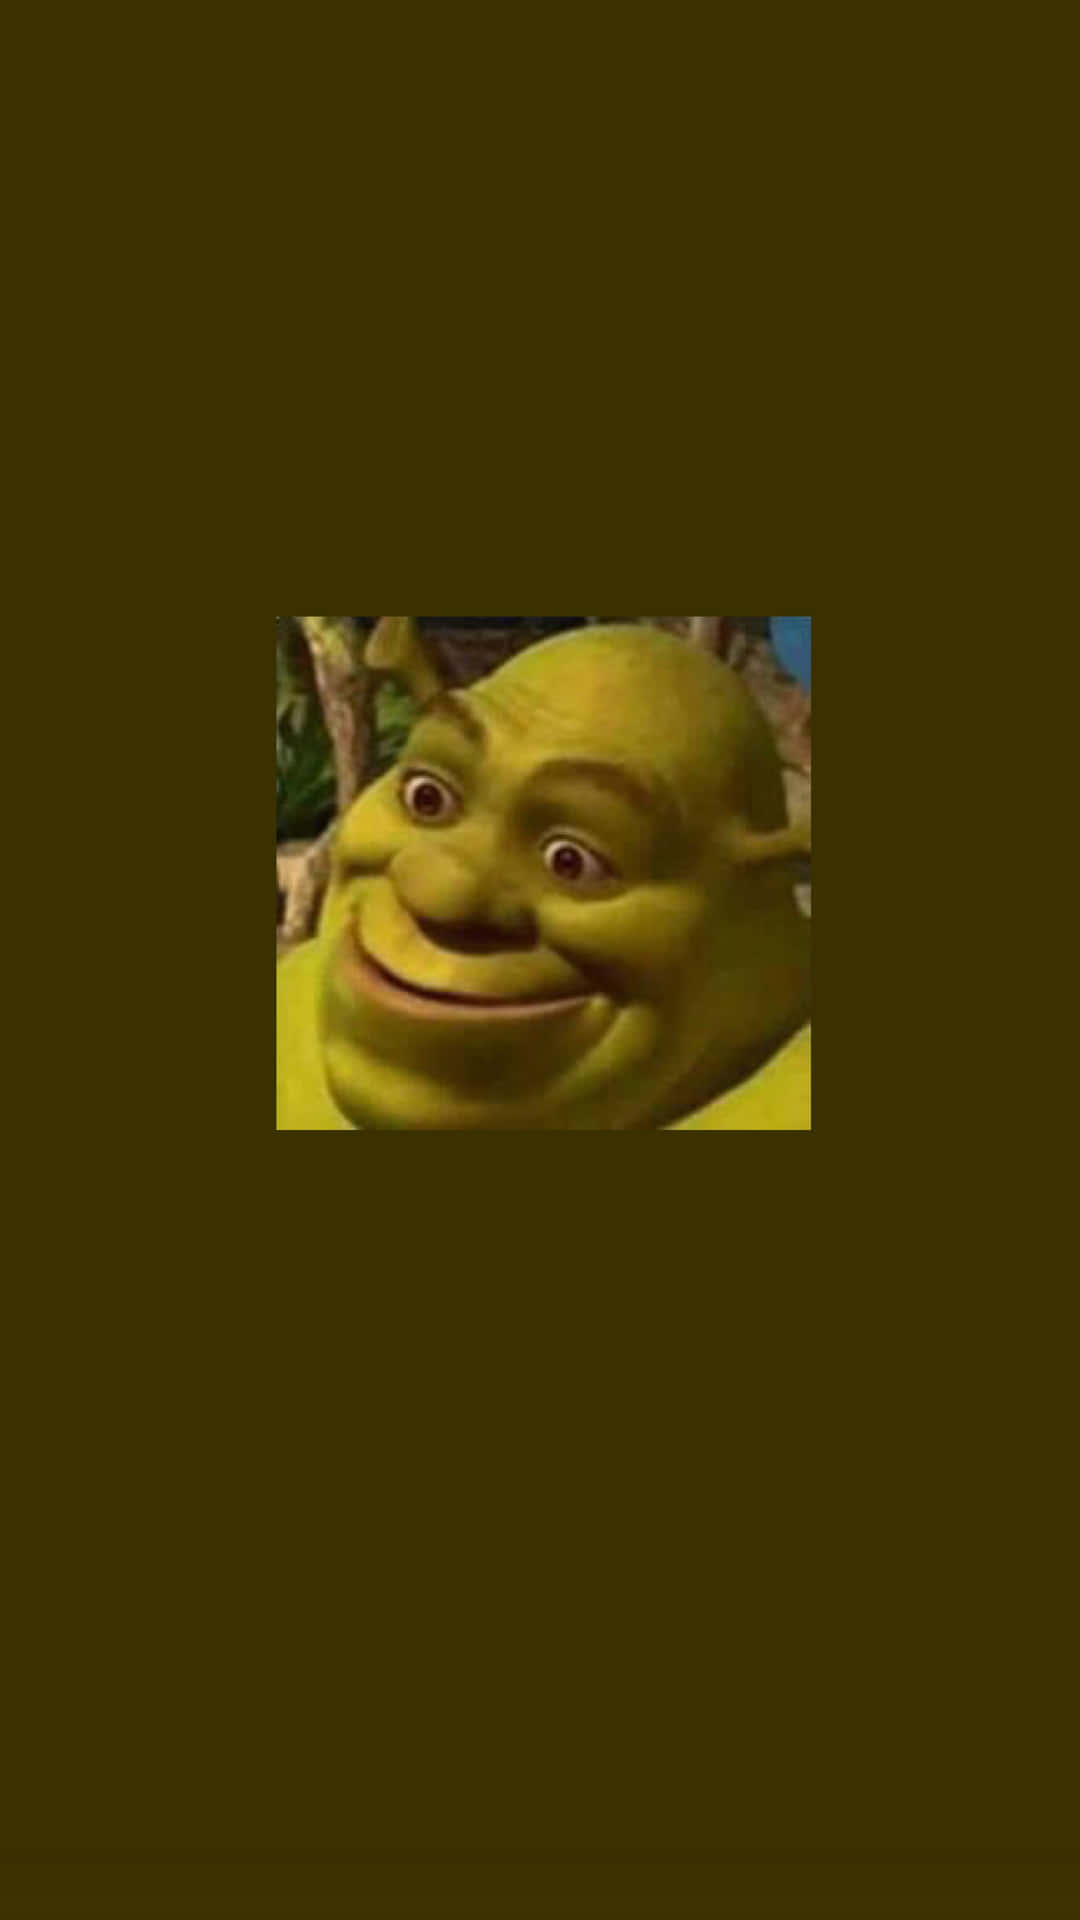 Shrek laver et morsomt ansigt